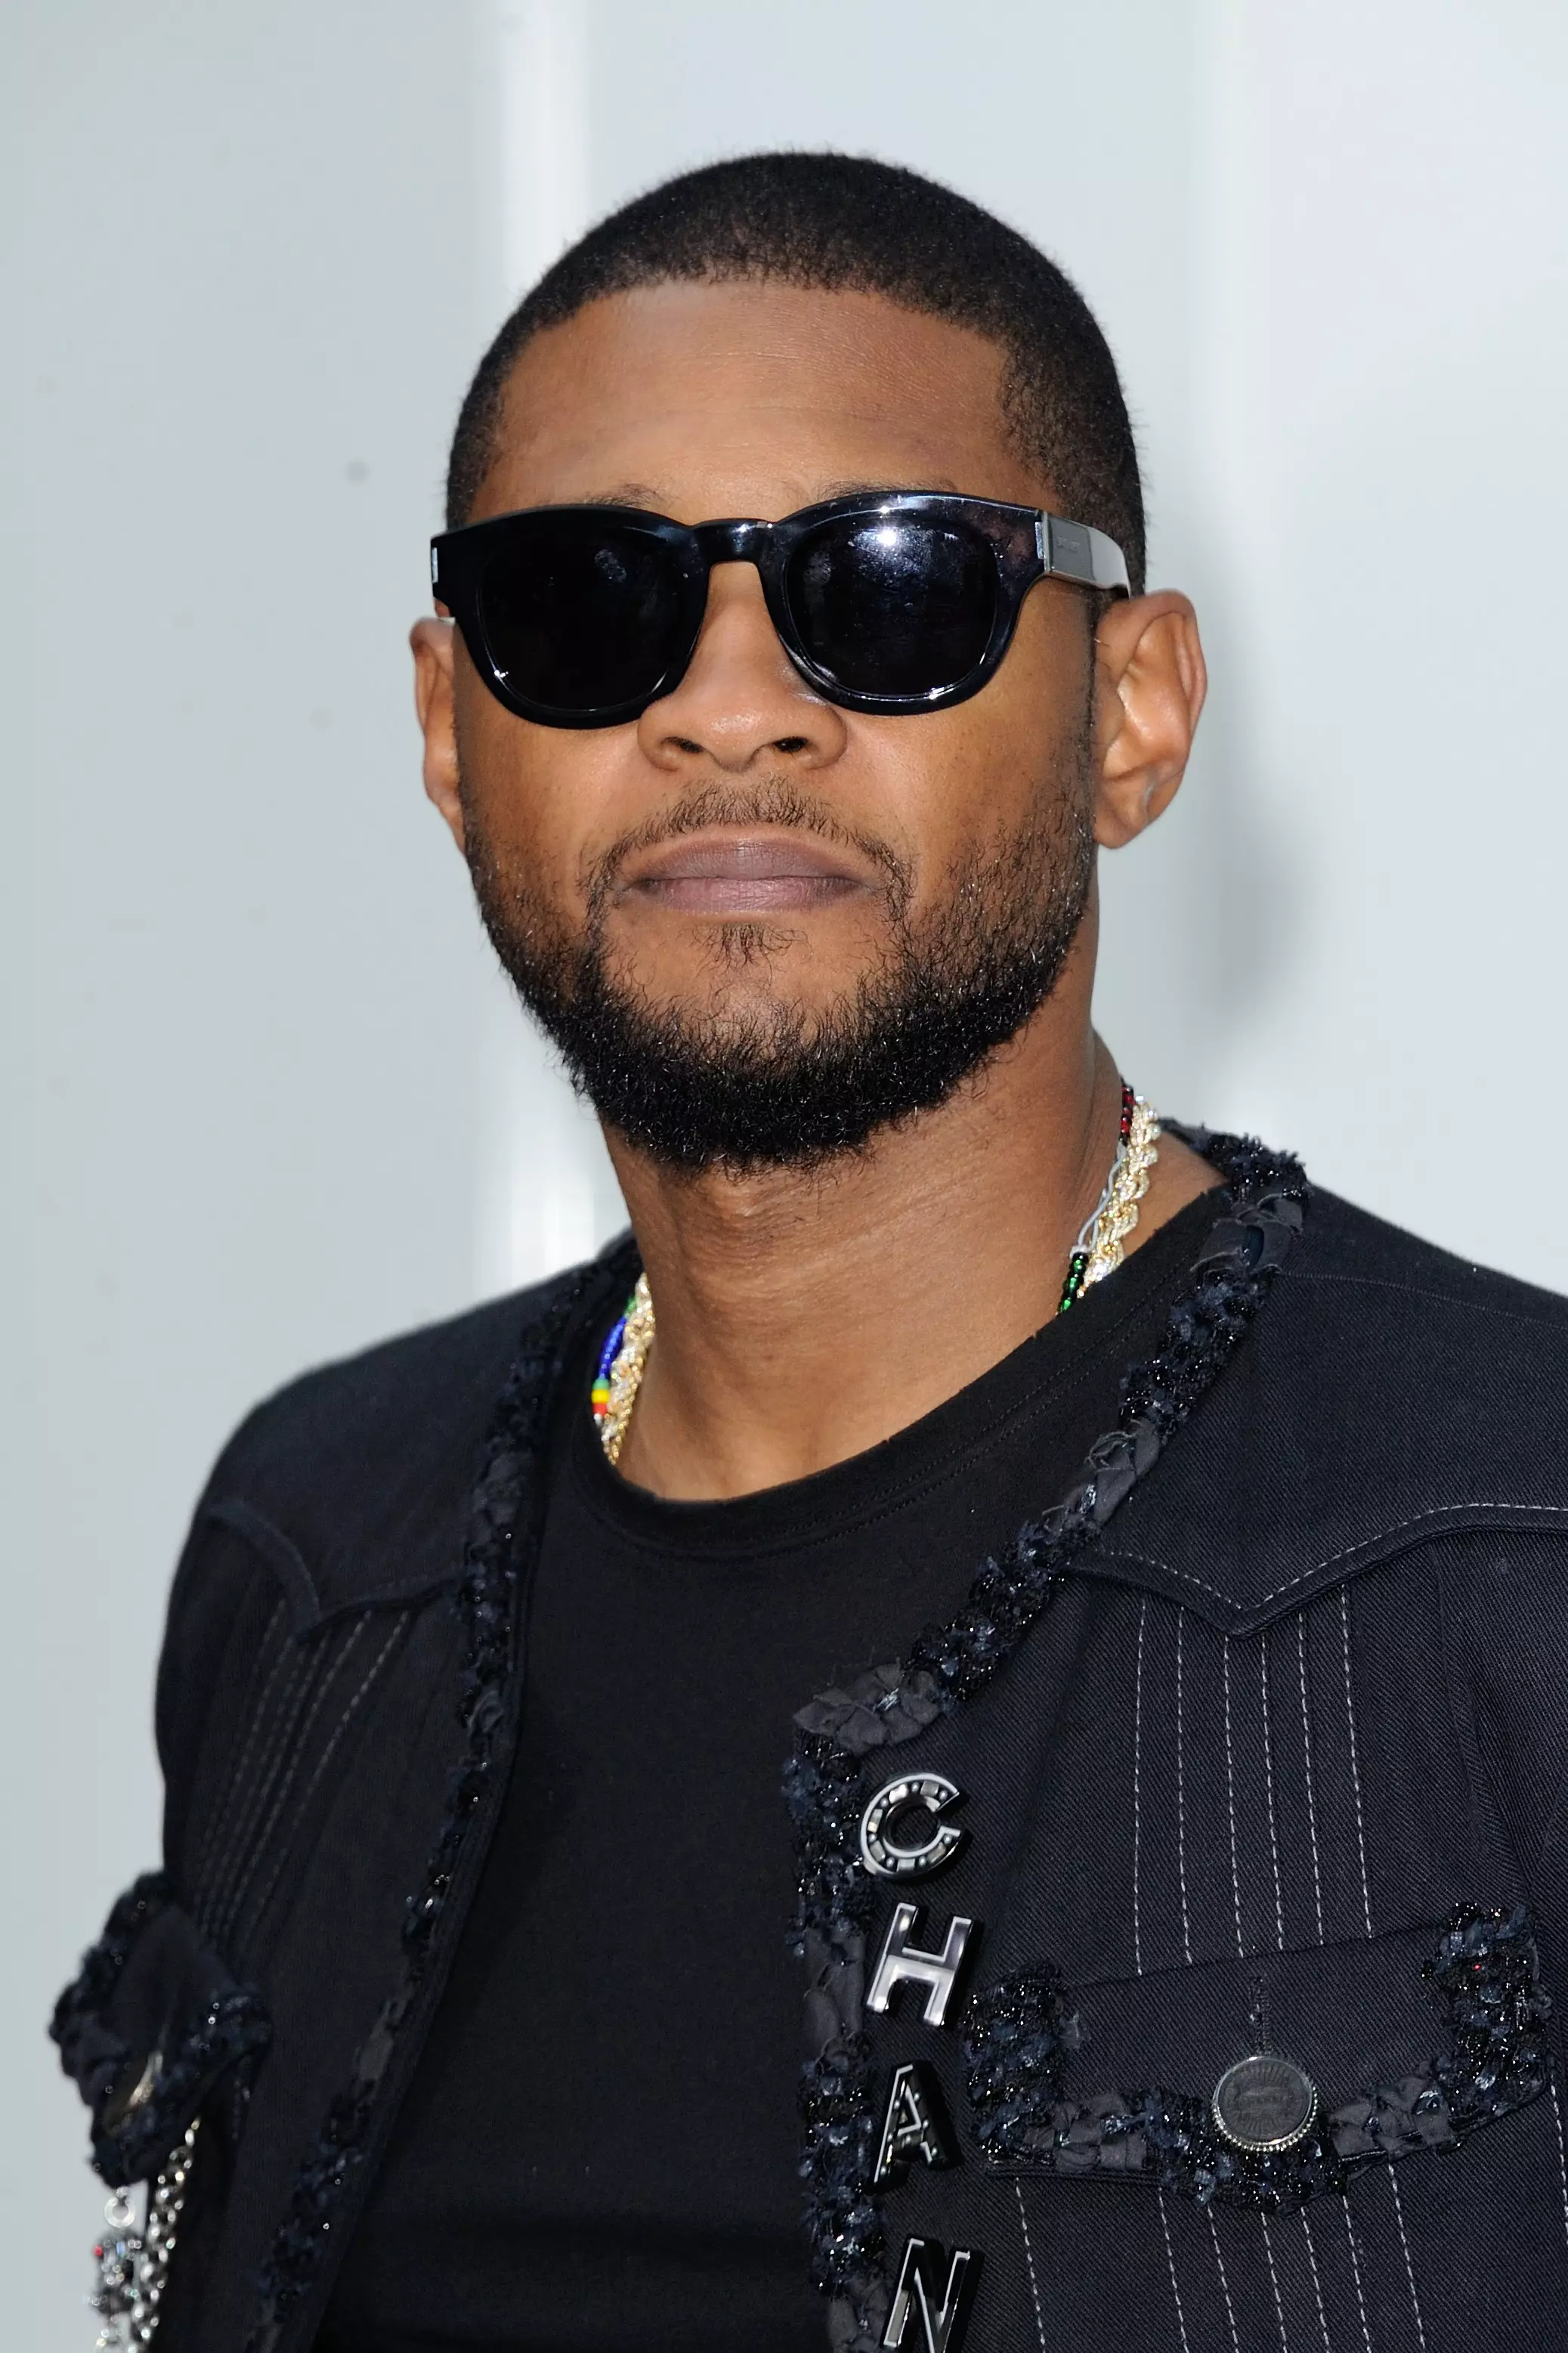 Stock image of Usher